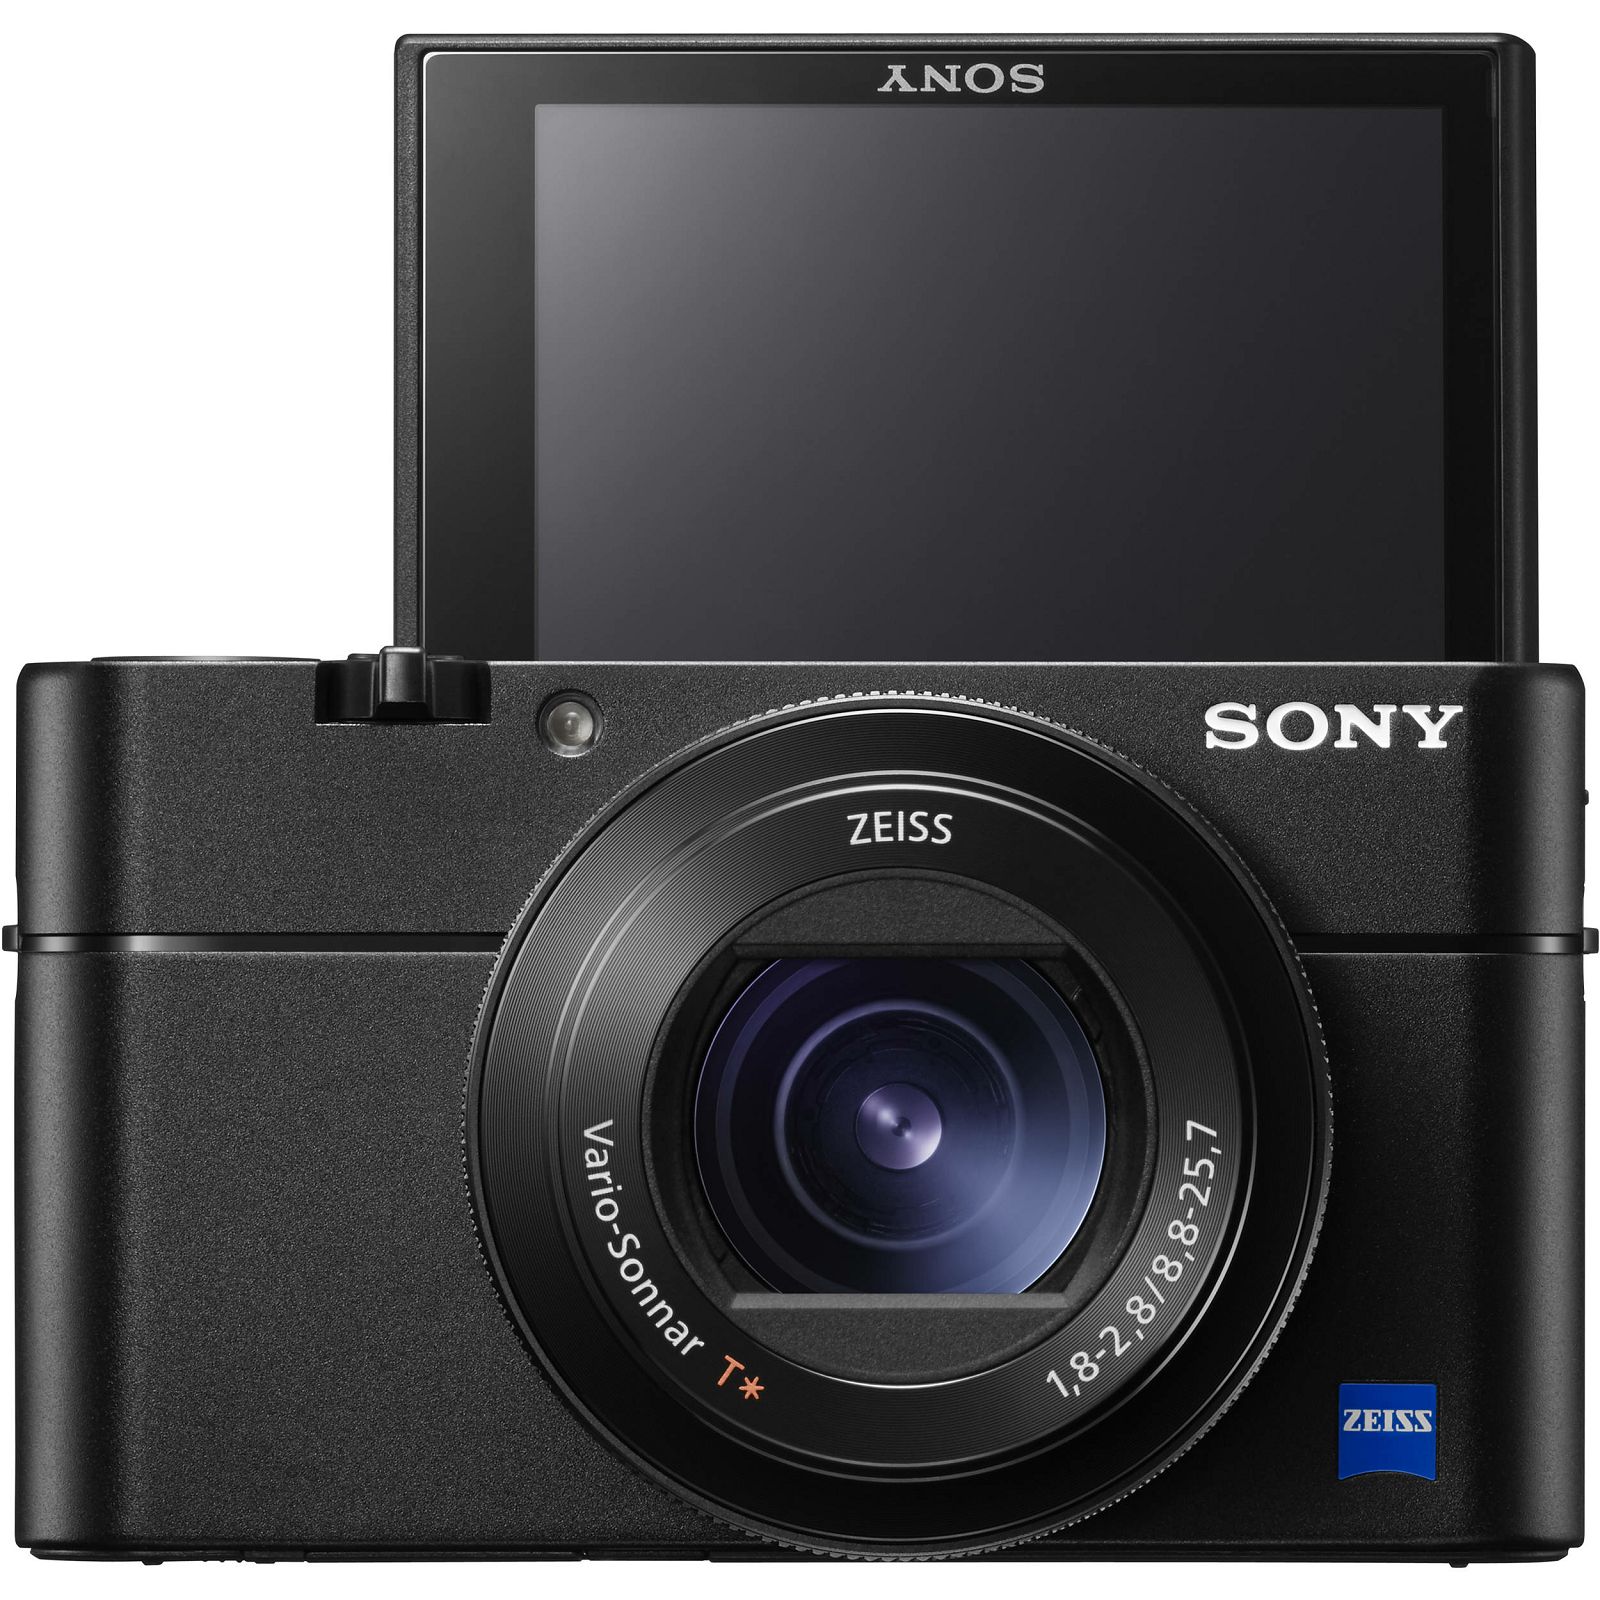 Sony Cyber-shot DSC-RX100 M5 Black crni Digitalni fotoaparat s integriranim objektivom Carl Zeiss Vario-Sonnar T* 10.4-37.1mm f/1.8-4.9 Digital Camera RX100 V RX-100 DSCRX100M5 20.2Mp (DSCRX100M5.CE3)